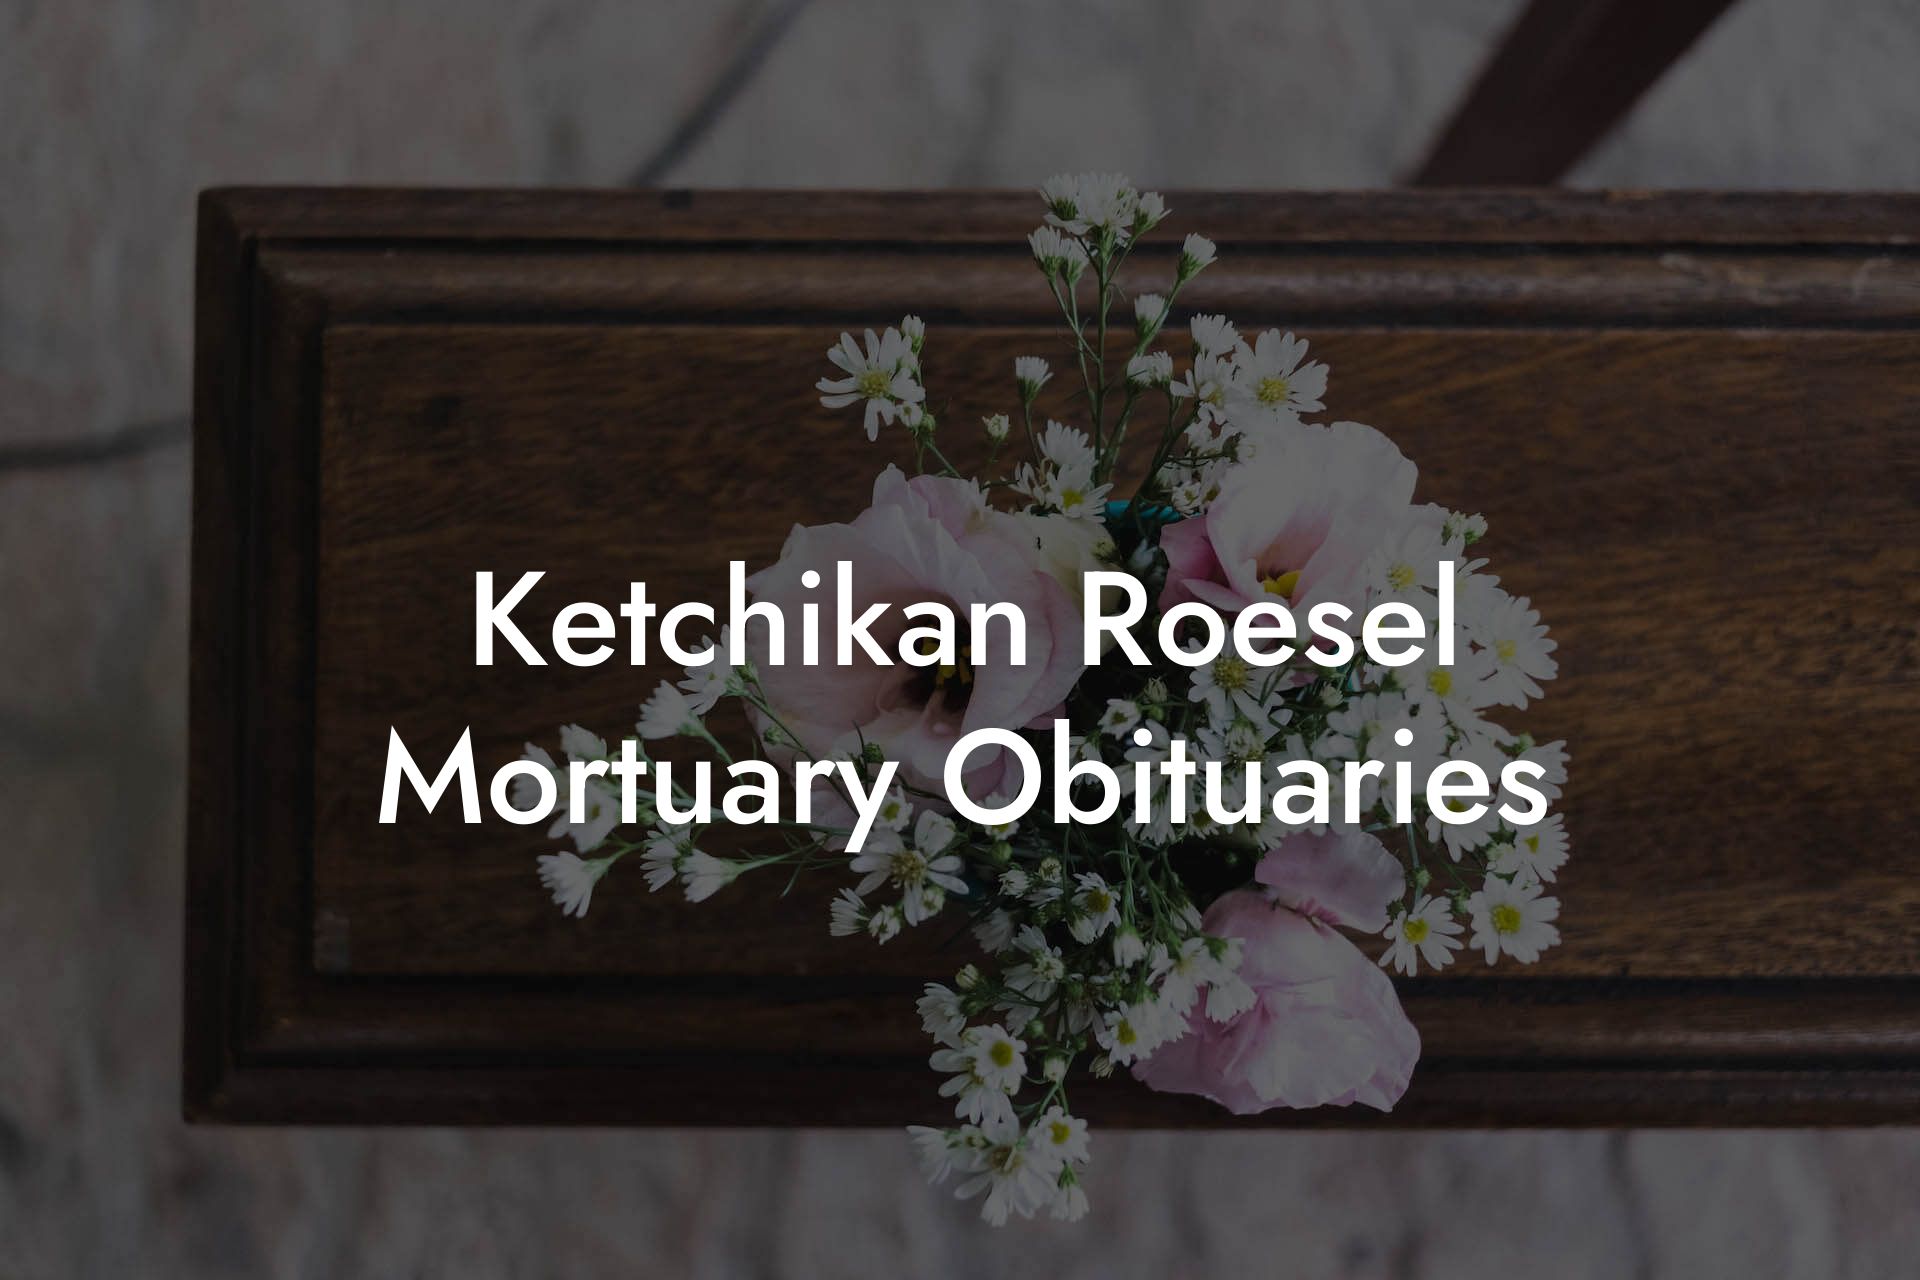 Ketchikan Roesel Mortuary Obituaries